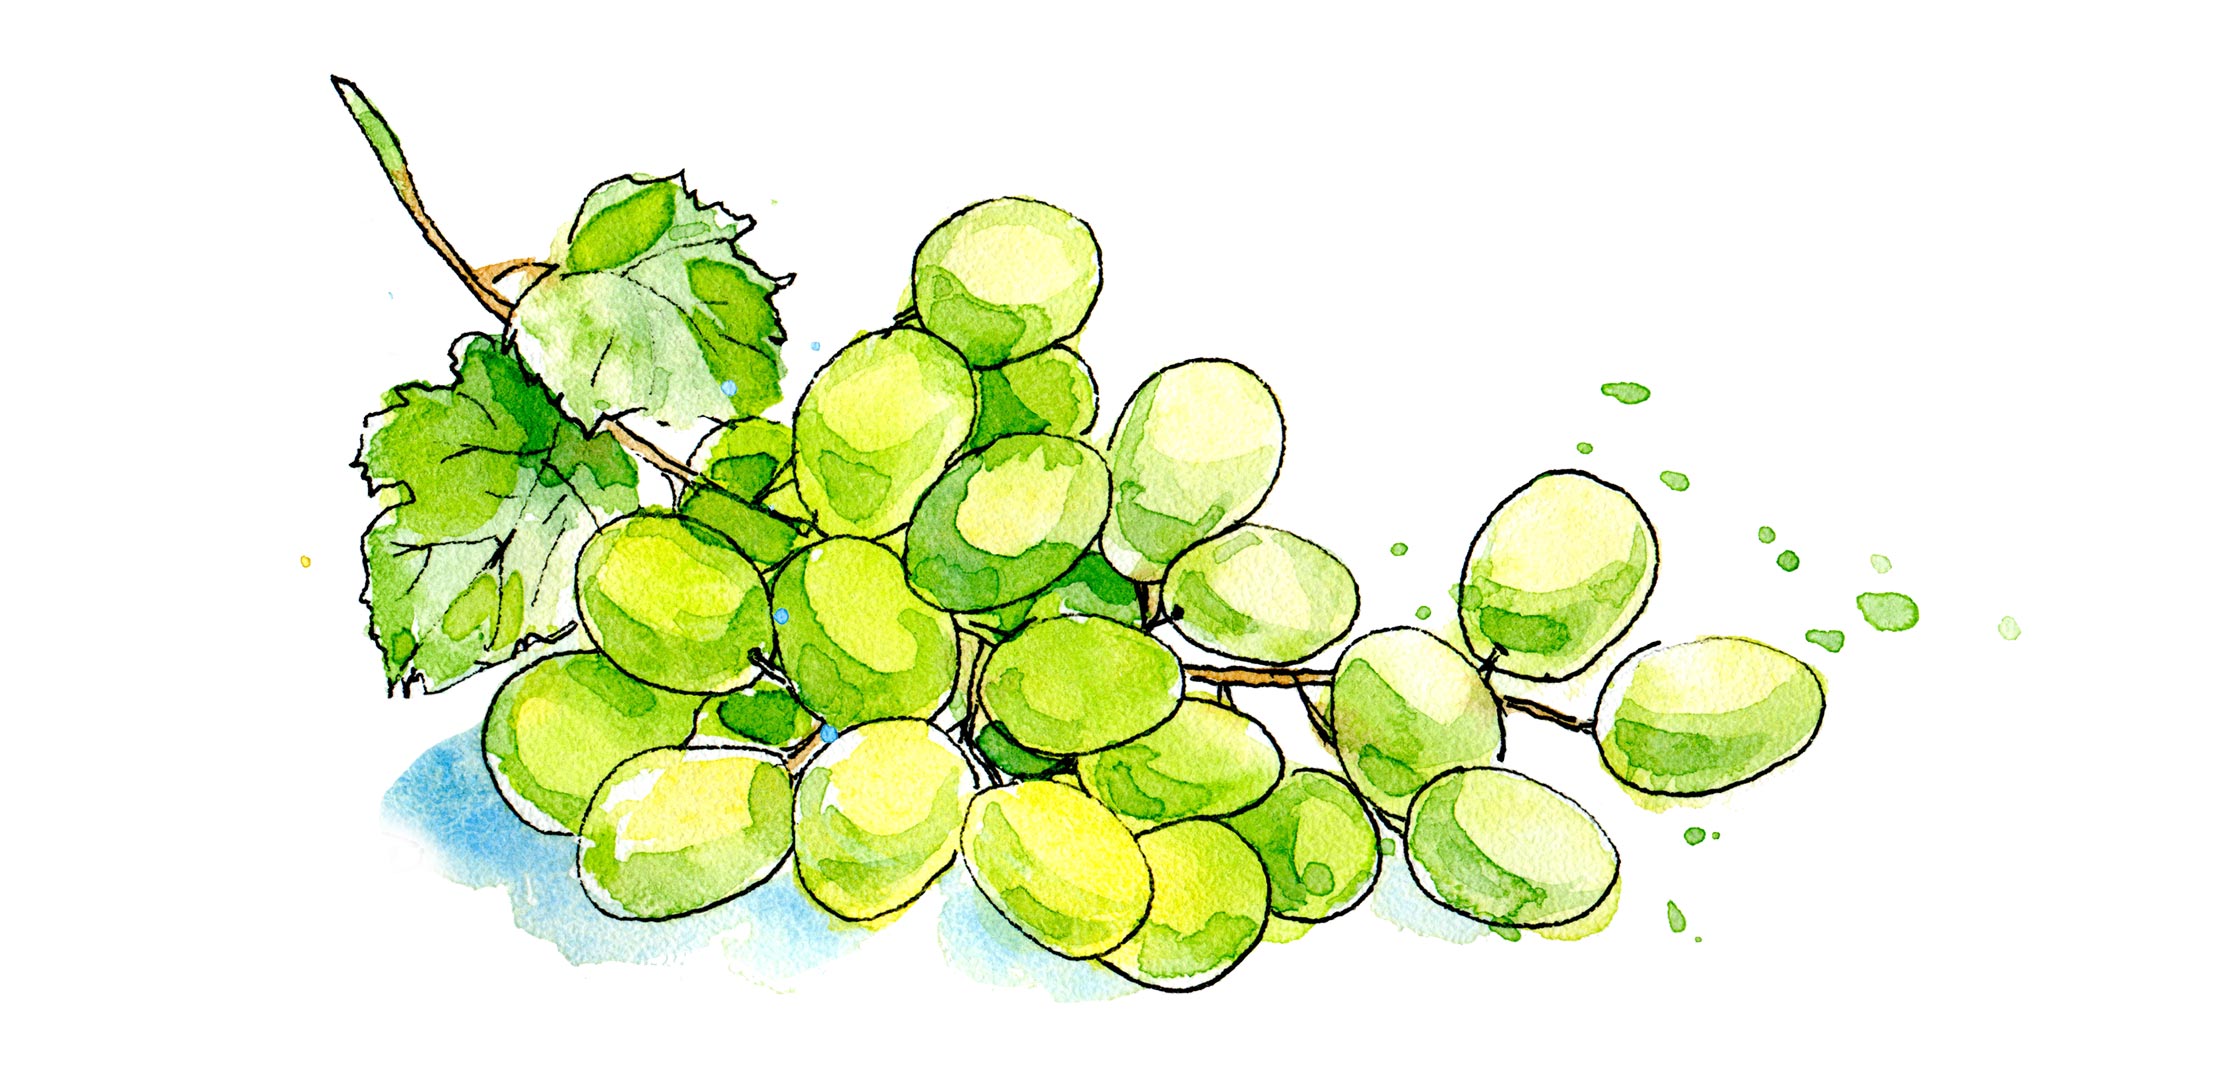 Aquarell-Illustration: gemalte weiße Weintrauben